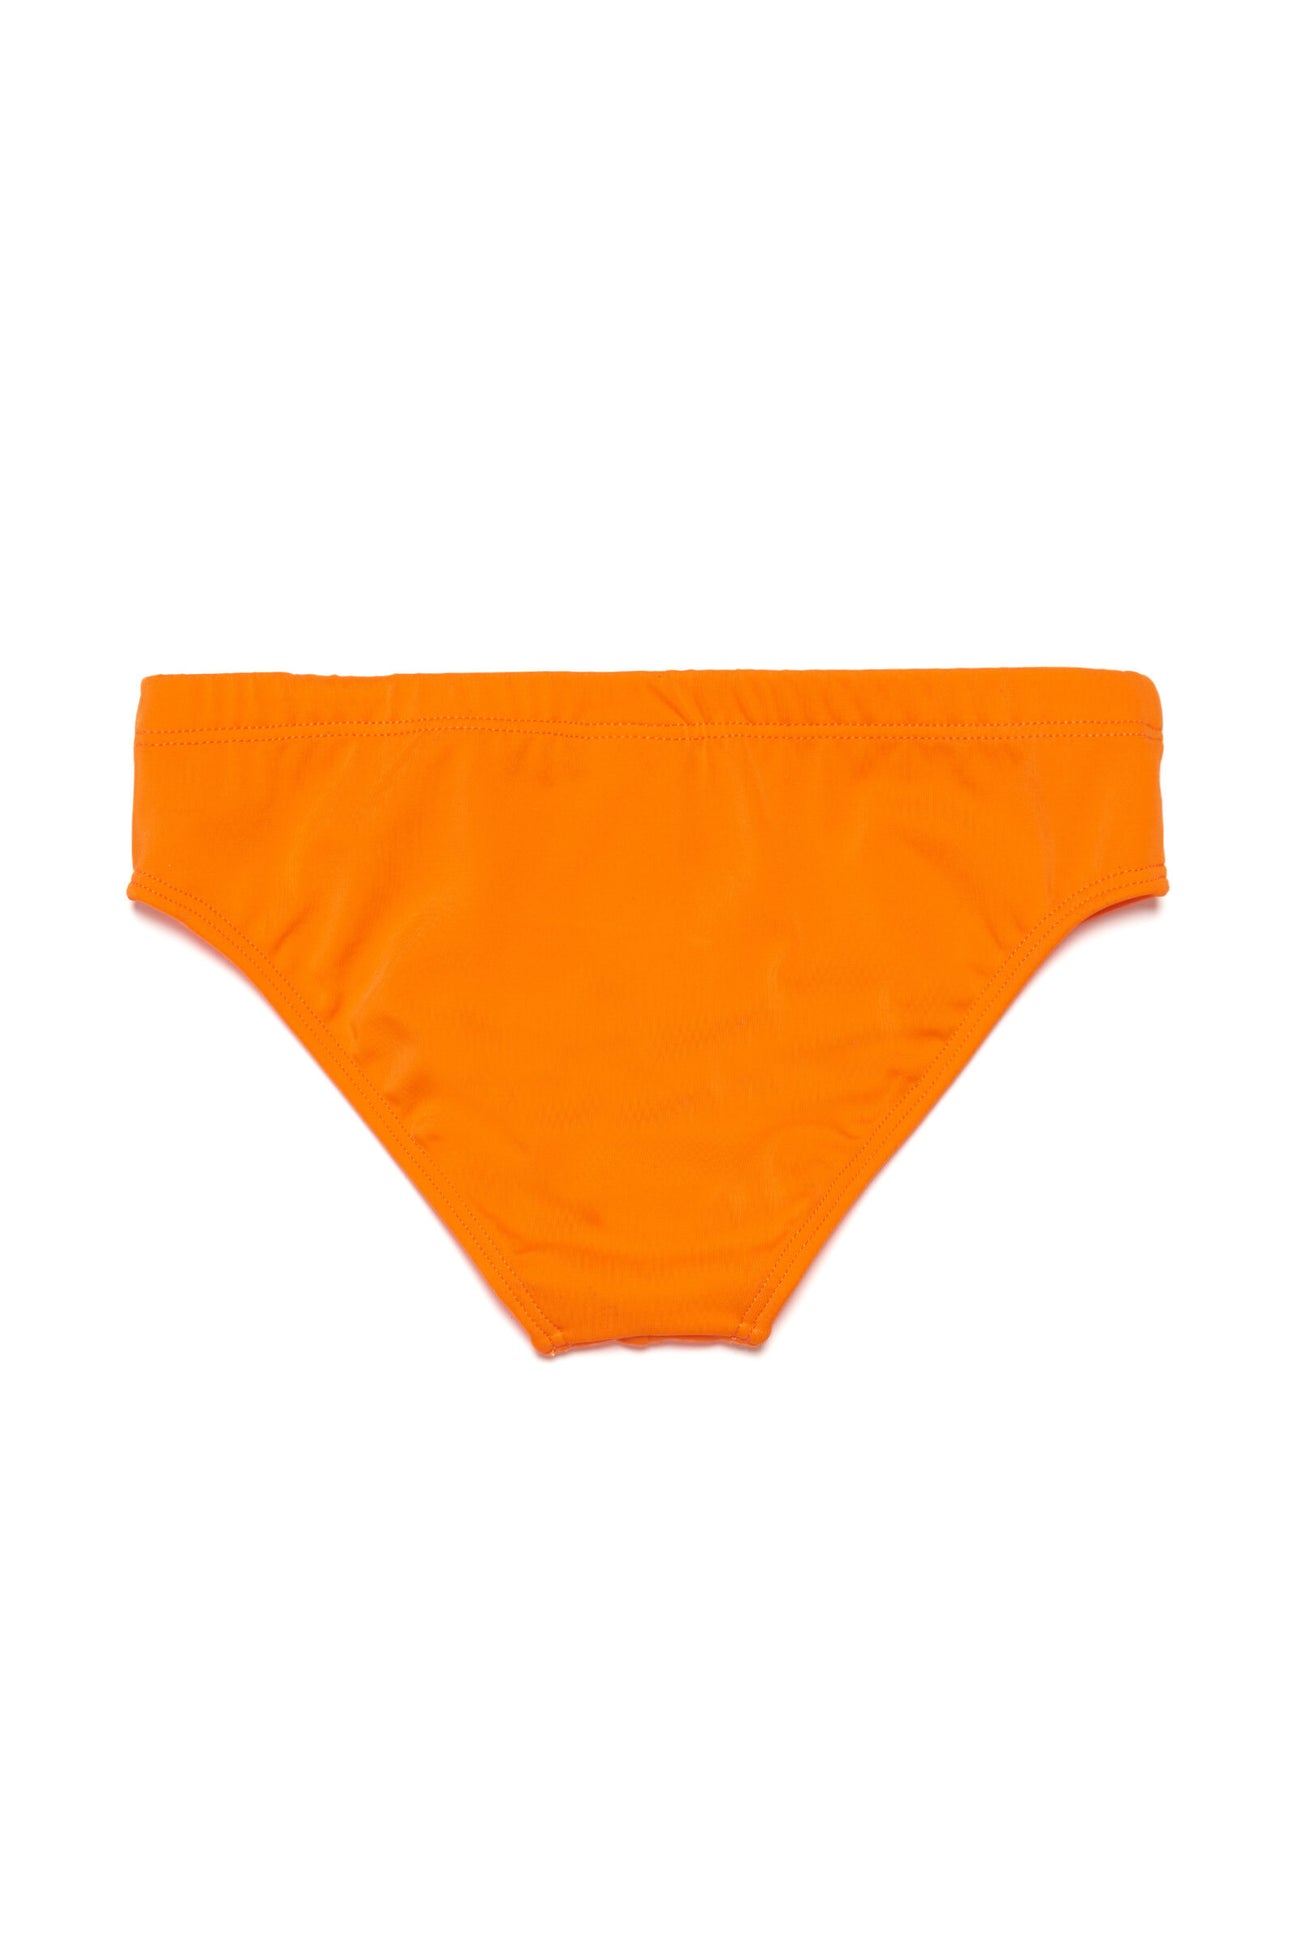 Fluo orange lycra swim brief with logo Fluo orange lycra swim brief with logo